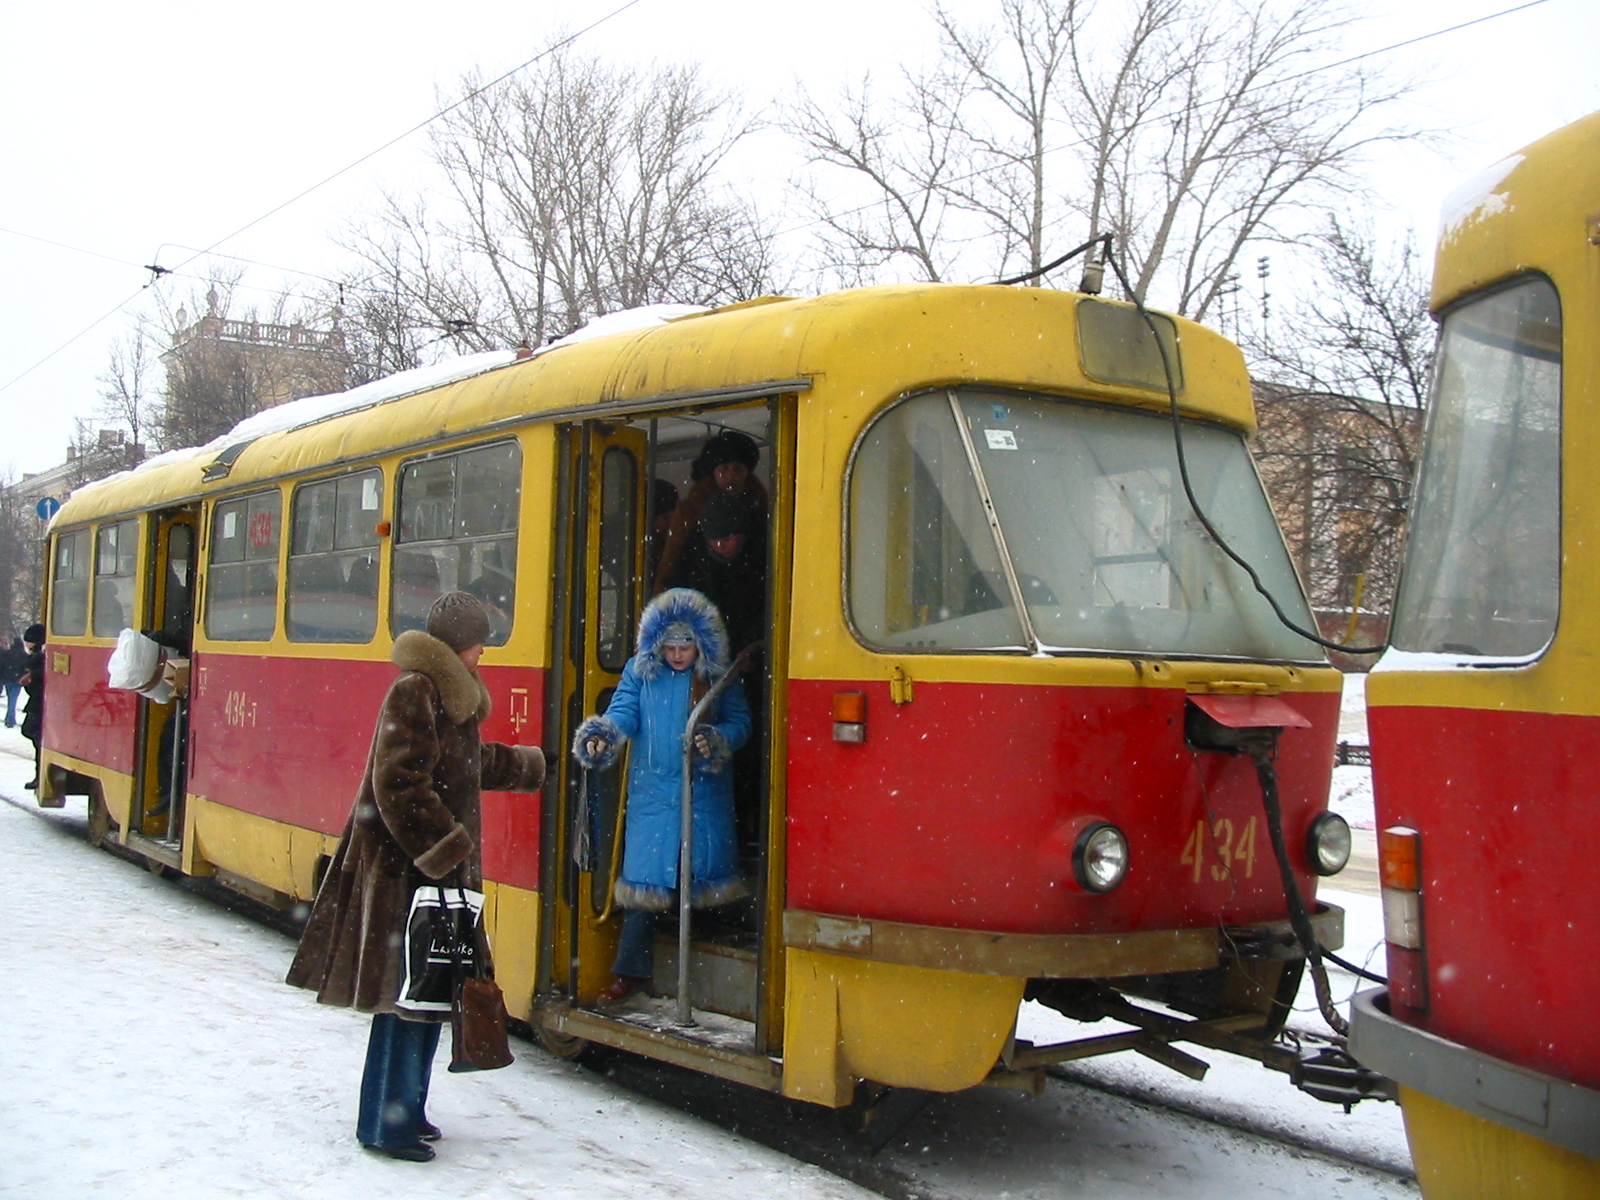 Трамвай Tatra T3SU 434, второй вагон поезда со снятым пантографом